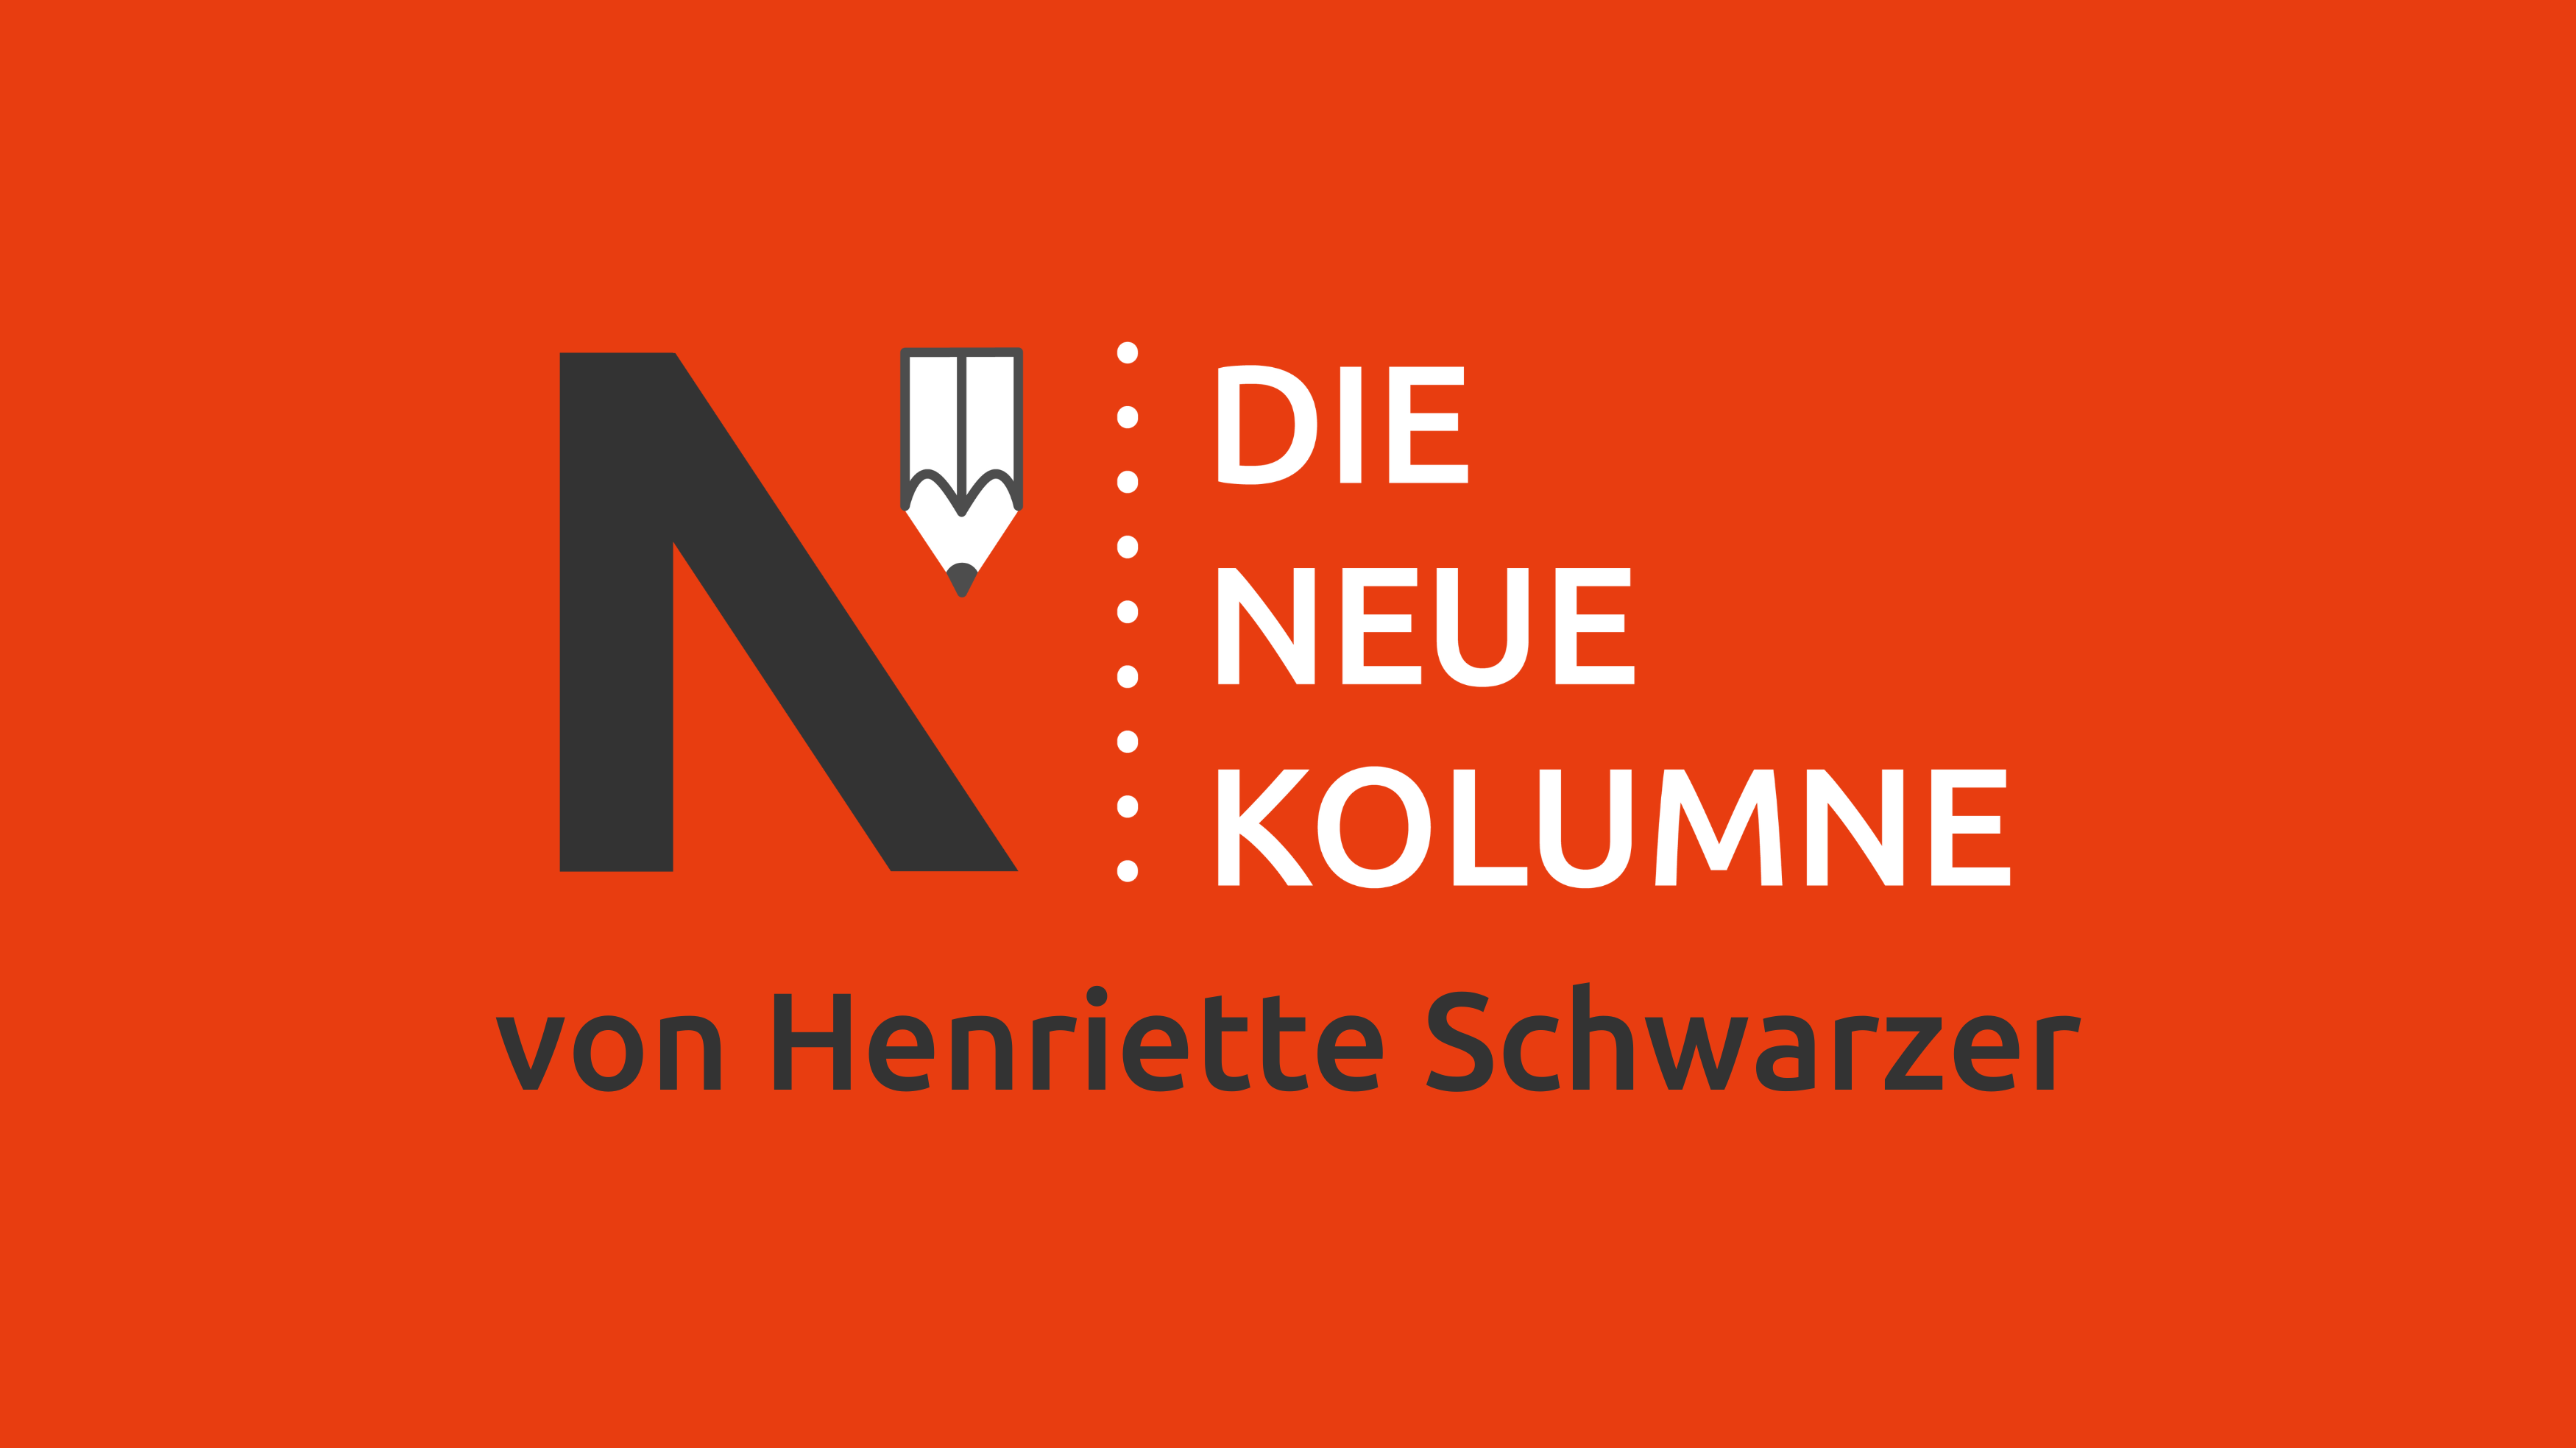 Das Logo von Die Neue Norm auf orangenem Grund. Rechts davon steht; Die Neue Kolumne. Unten steht: von Henriette Schwarzer.